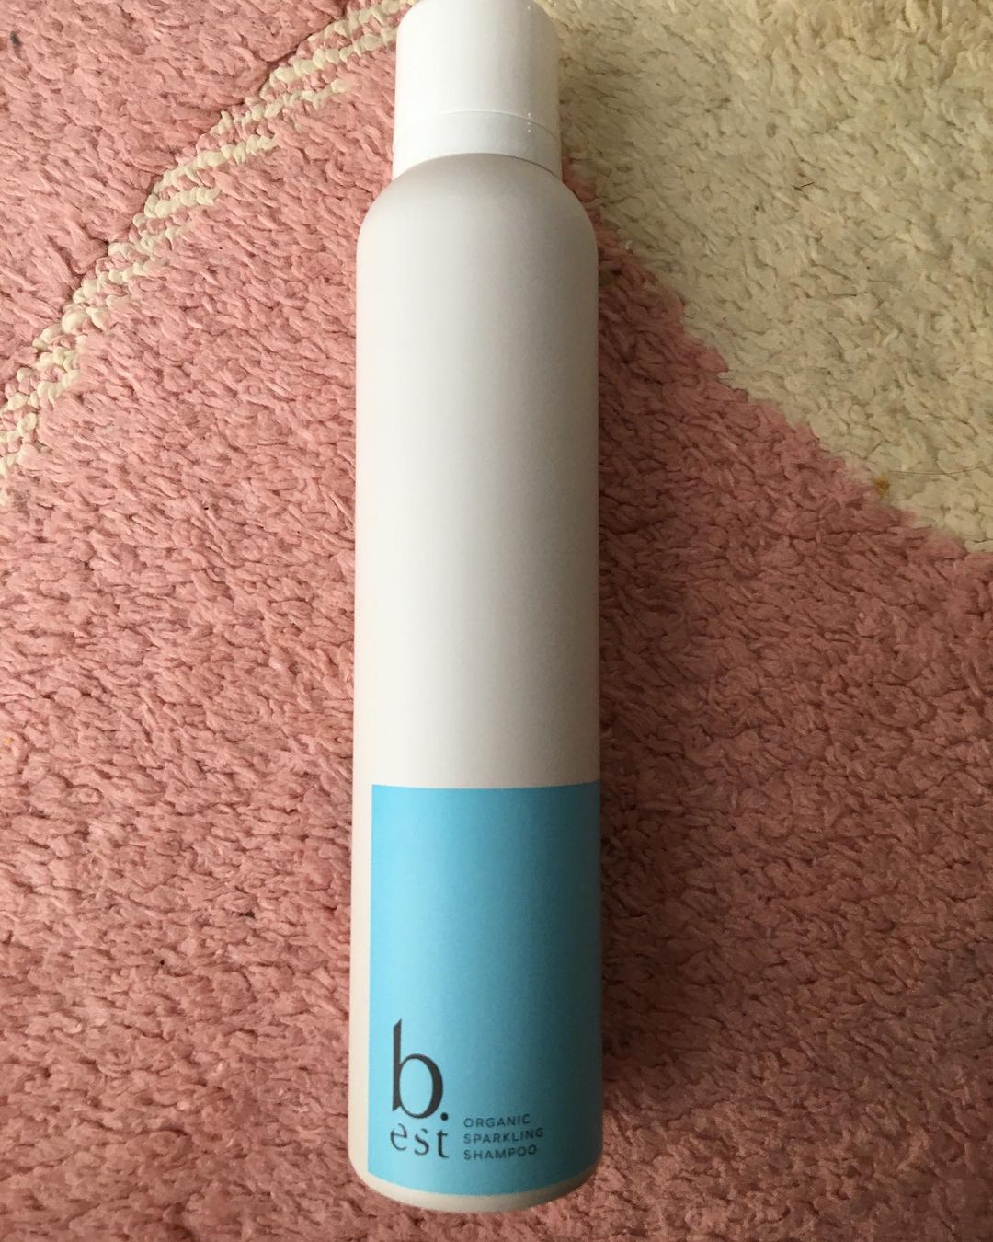 b.est(ビーエスト) organic sparkling shampoo 200mlを使ったayumiyさんのクチコミ画像1